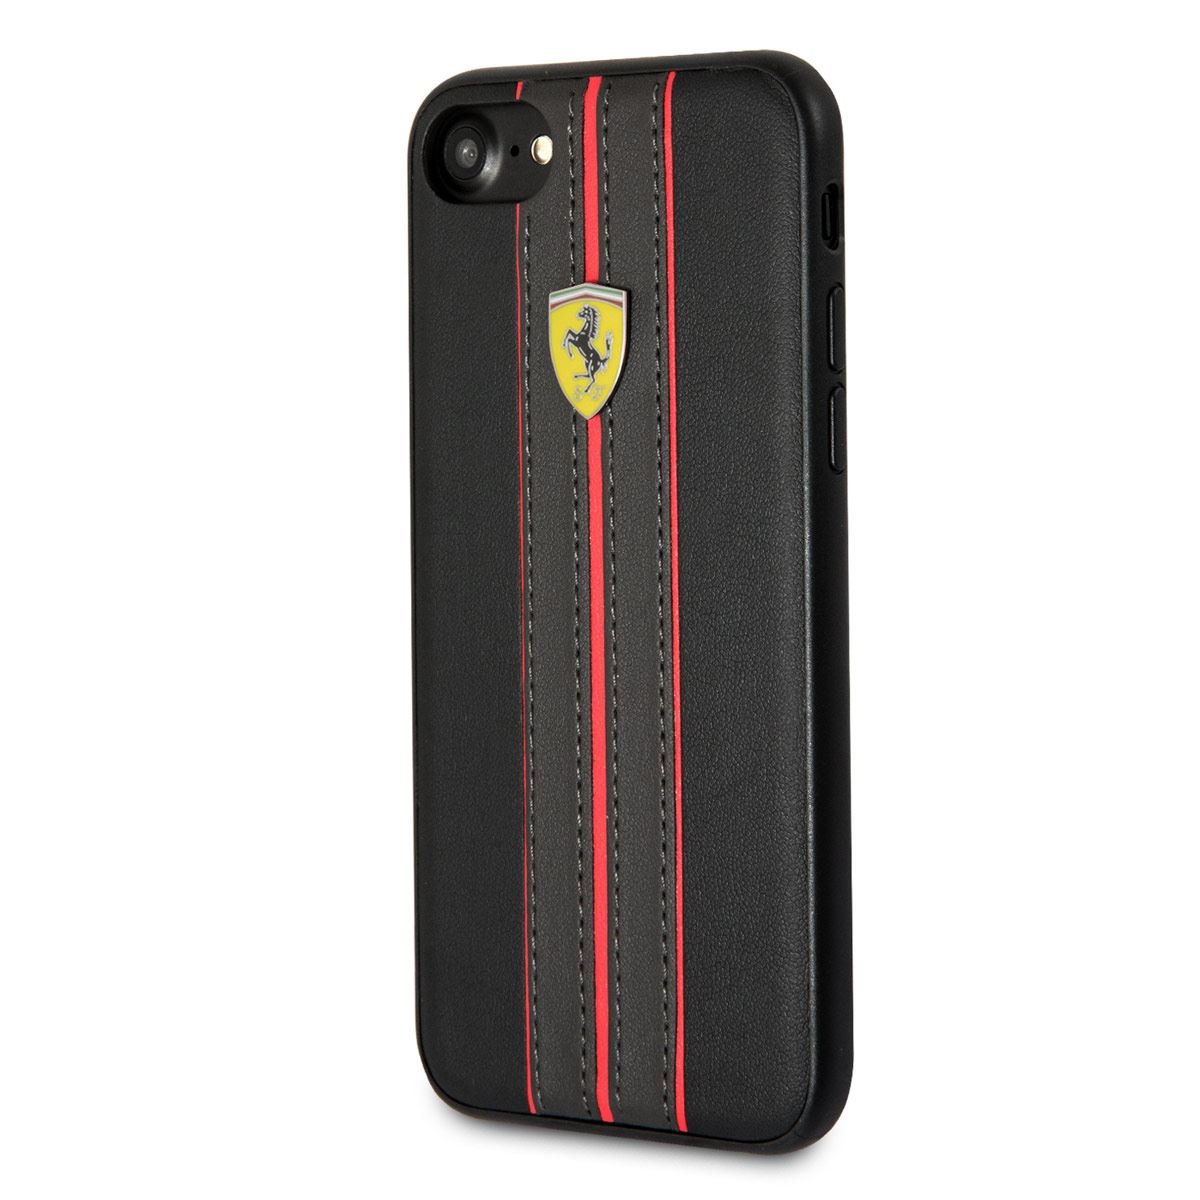 Funda Ferrari iPhone 6/7/8 Negra Piel